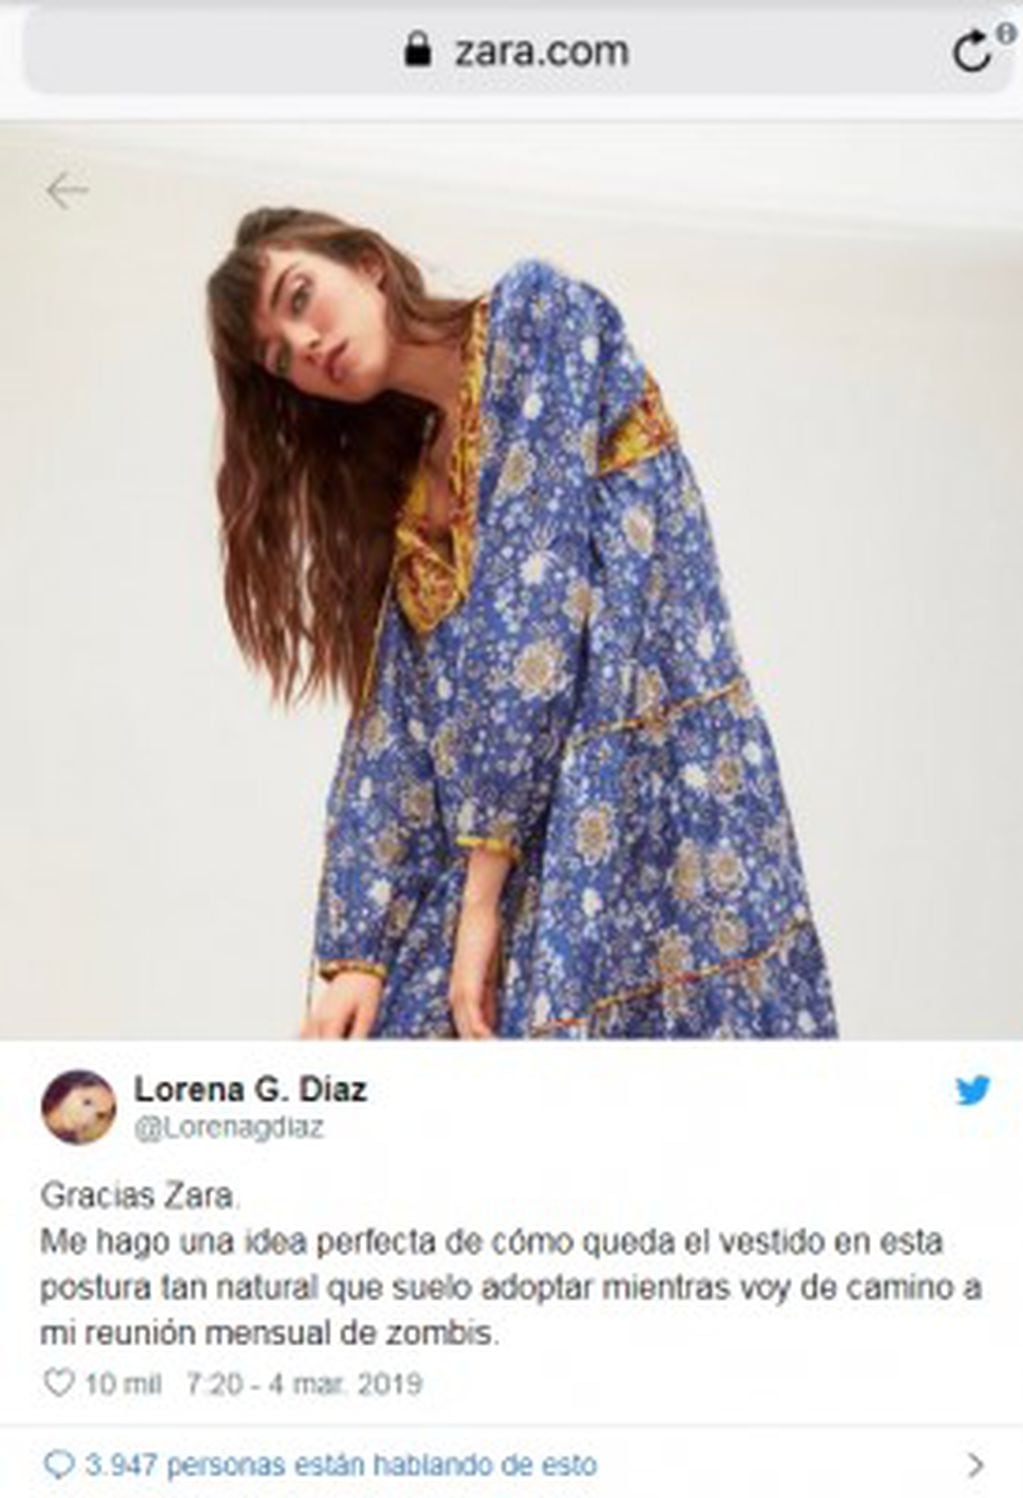 La foto de la campaña de Zara que generó polémica en Twitter